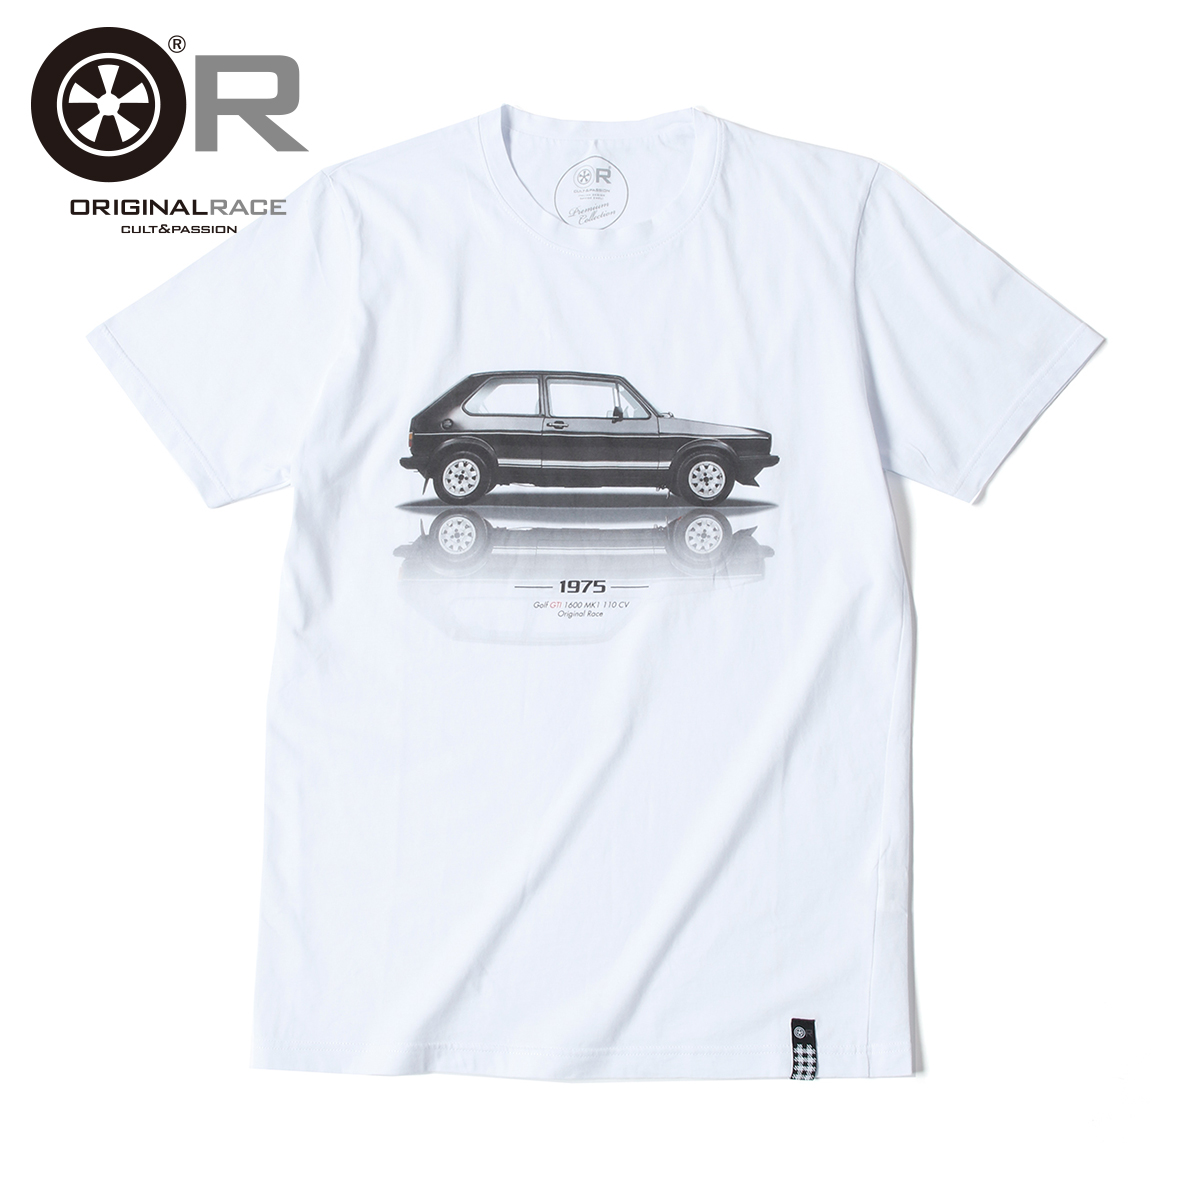 70 80年代のレーシングカーやbmw Gsモデルを中心に写真とイラストを融合したようなプリントtシャツ オリジナル レース Original Race Golf メンズ 新生活 Gti フォルクスワーゲン 半袖 Tシャツ スリムフィット イタリア製